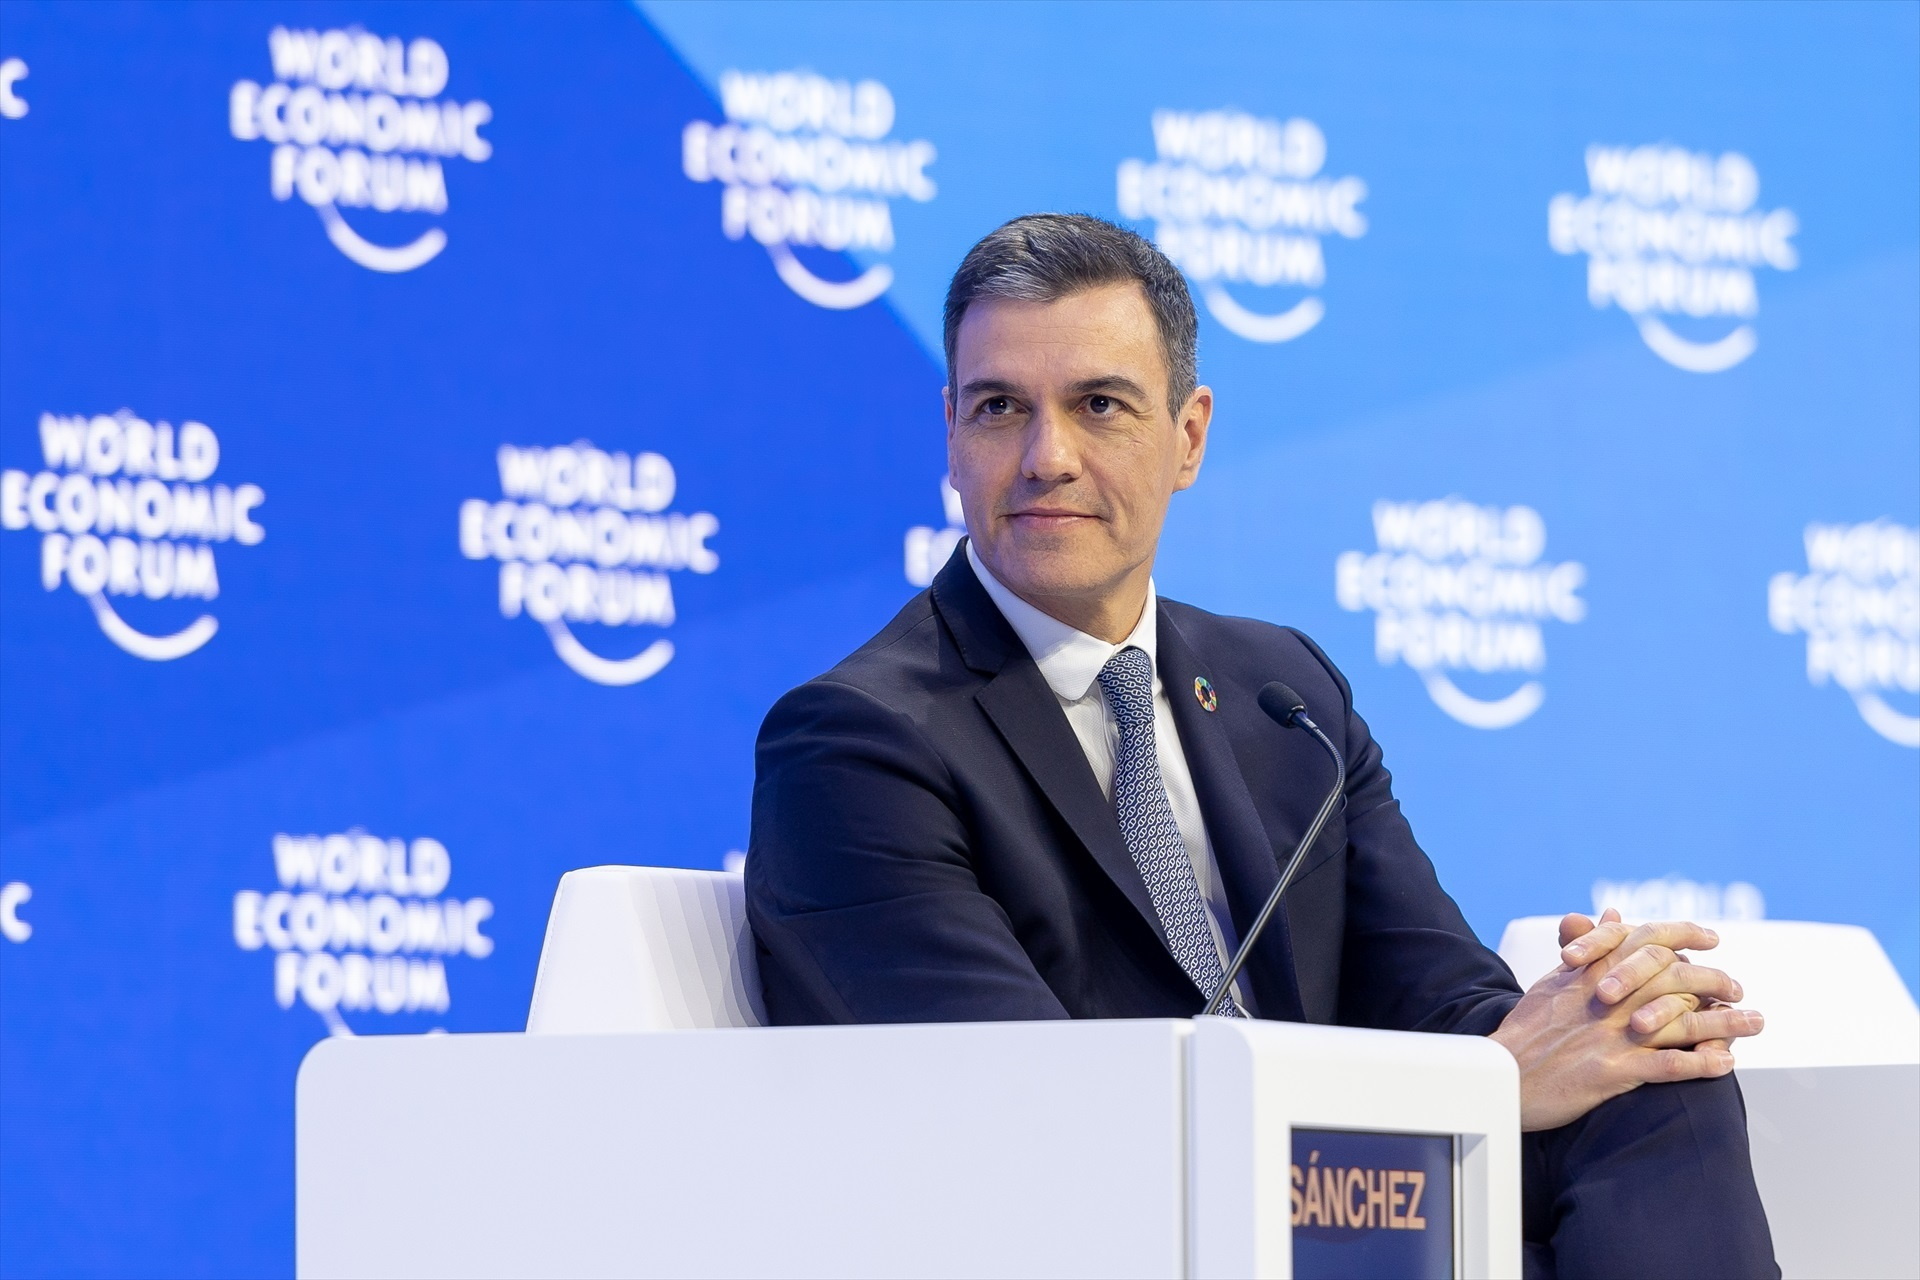 Sánchez carga contra el neoliberalismo en Davos y pide a los empresarios que sean "responsables"